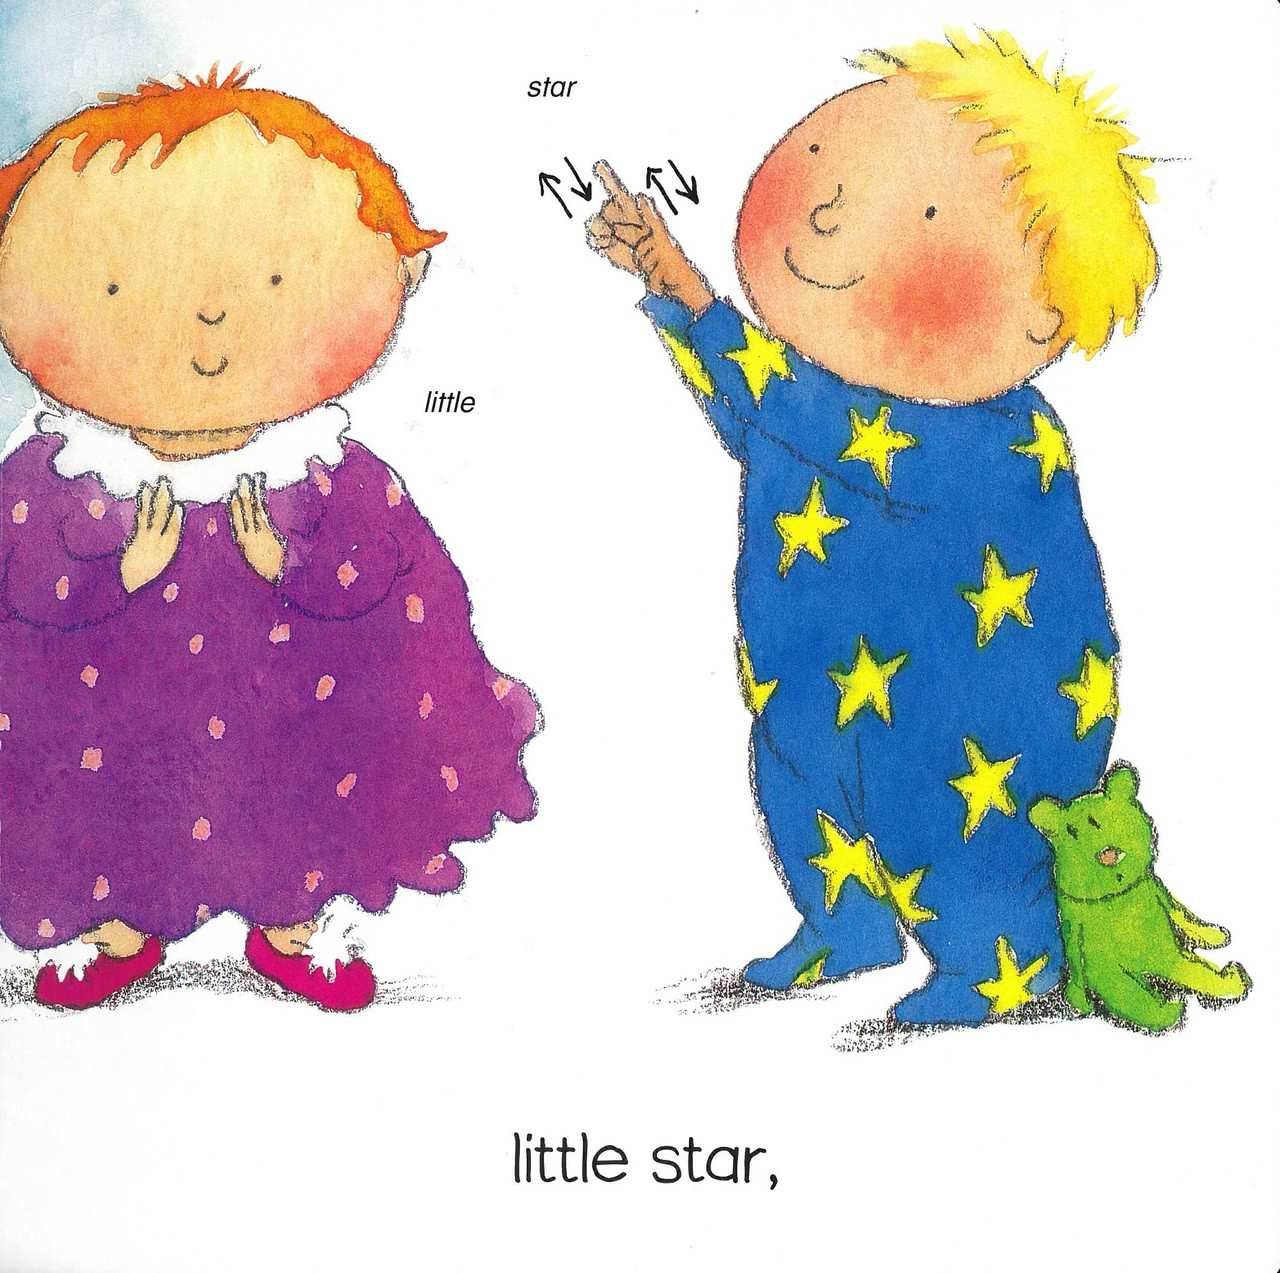 Twinkle, Twinkle, Little Star - (Board Book)